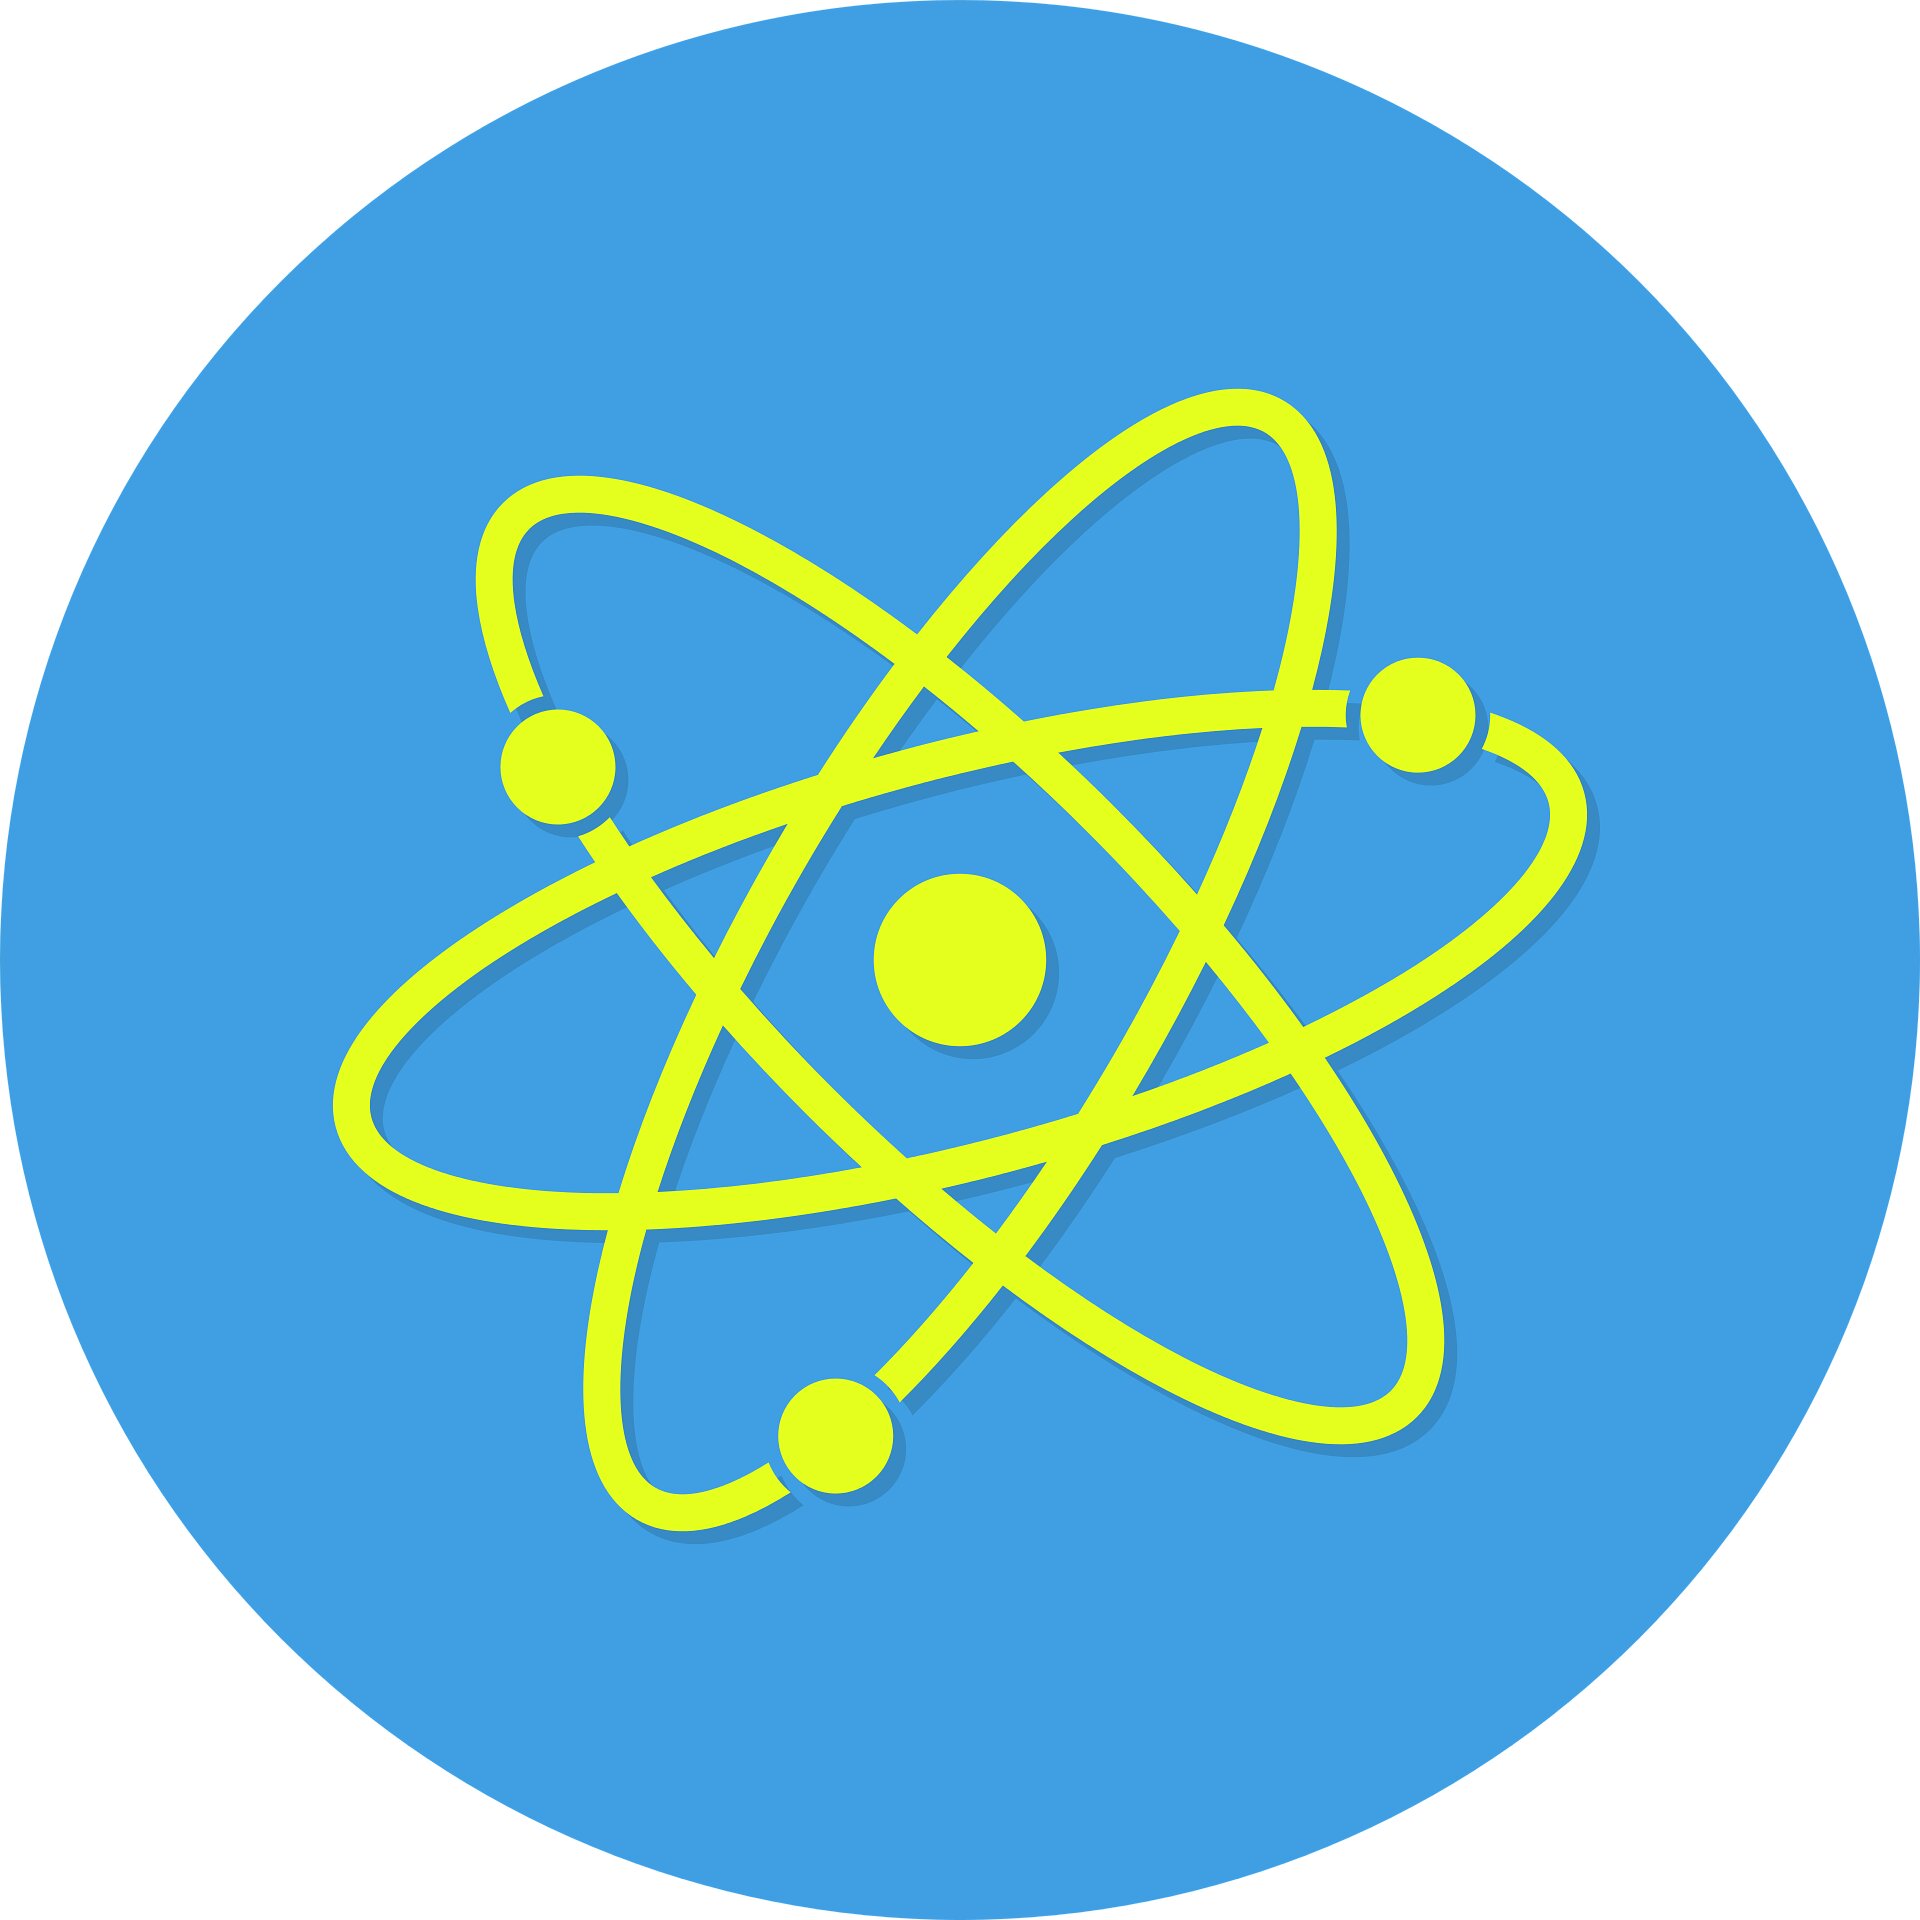 Атом высокой энергии. Знак атомной энергетики. Атомная Энергетика значок. Мирный атом символ. Символ ядерной физики.